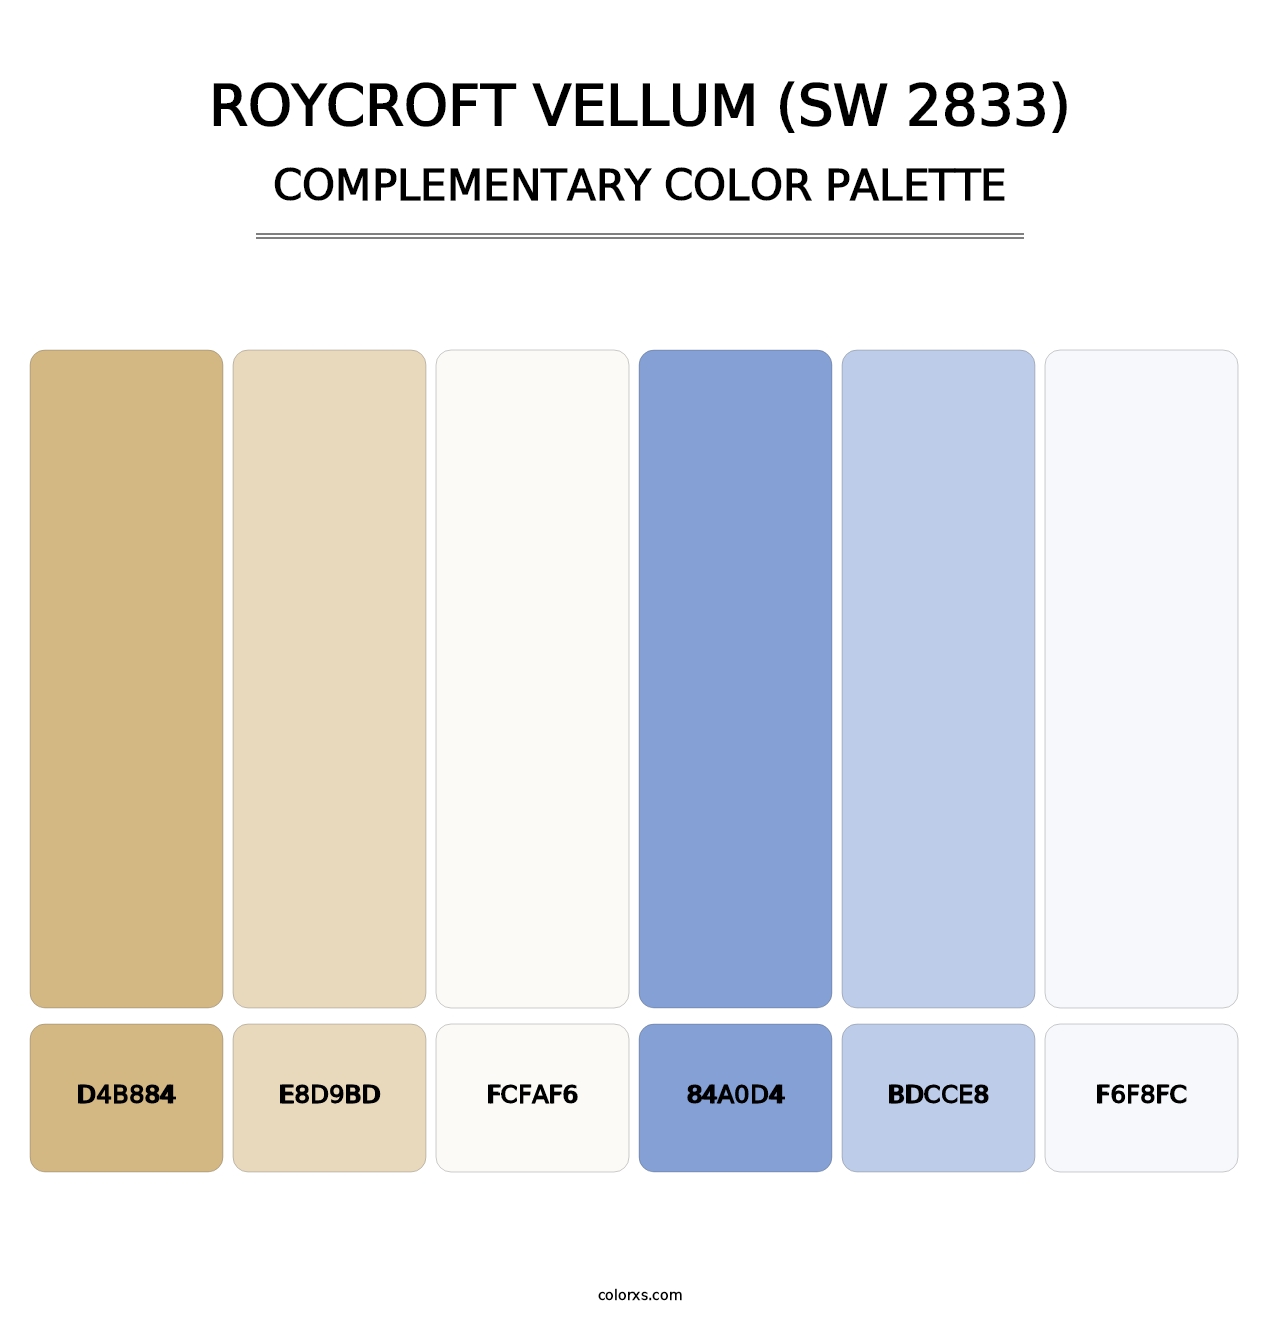 Roycroft Vellum (SW 2833) - Complementary Color Palette